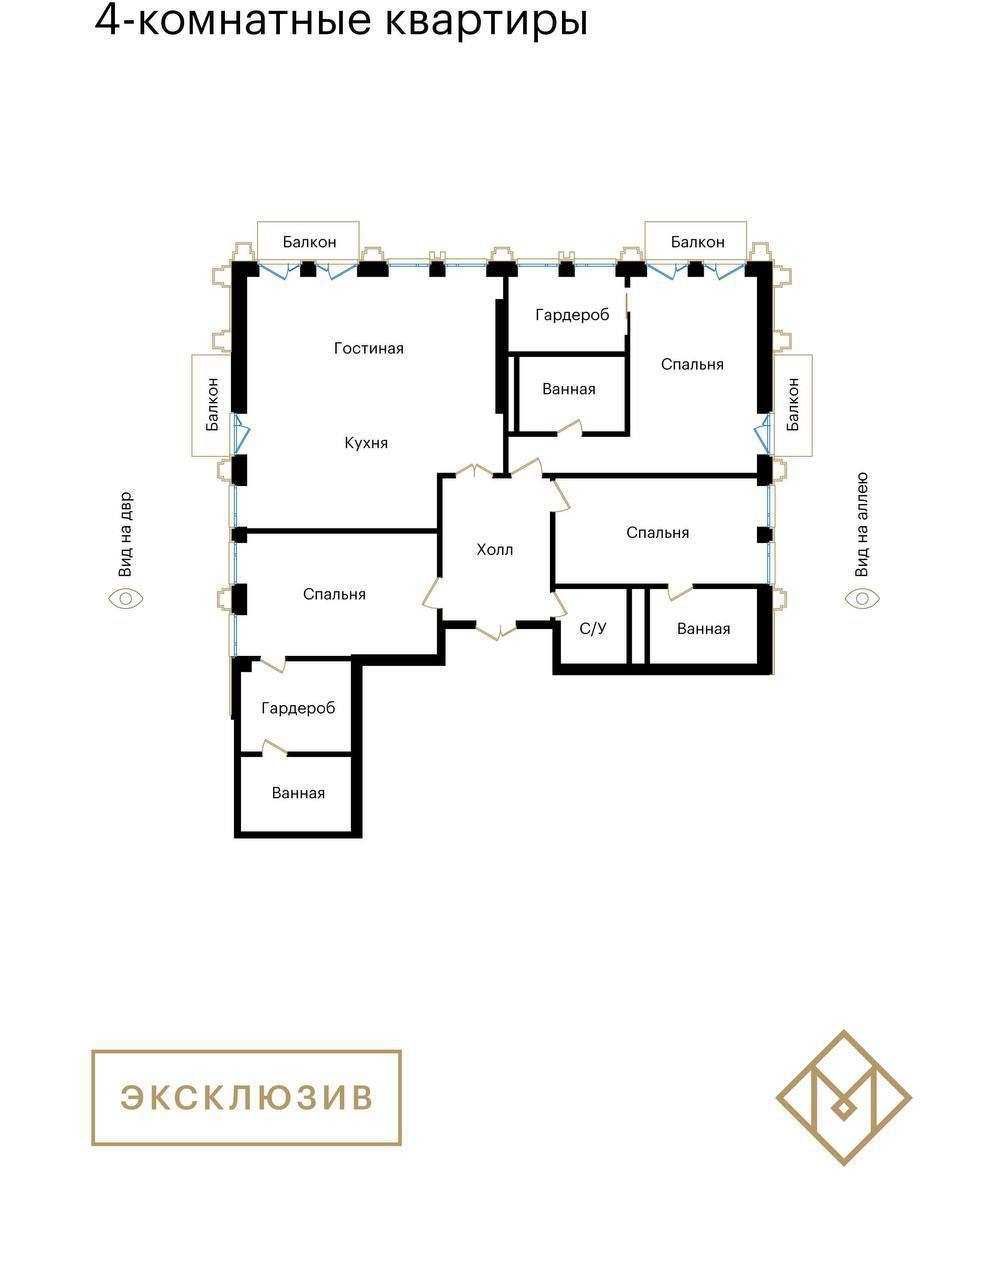 Golden House НОВОСТРОЙКА  D blok  4ком  232.42 м2 коробка